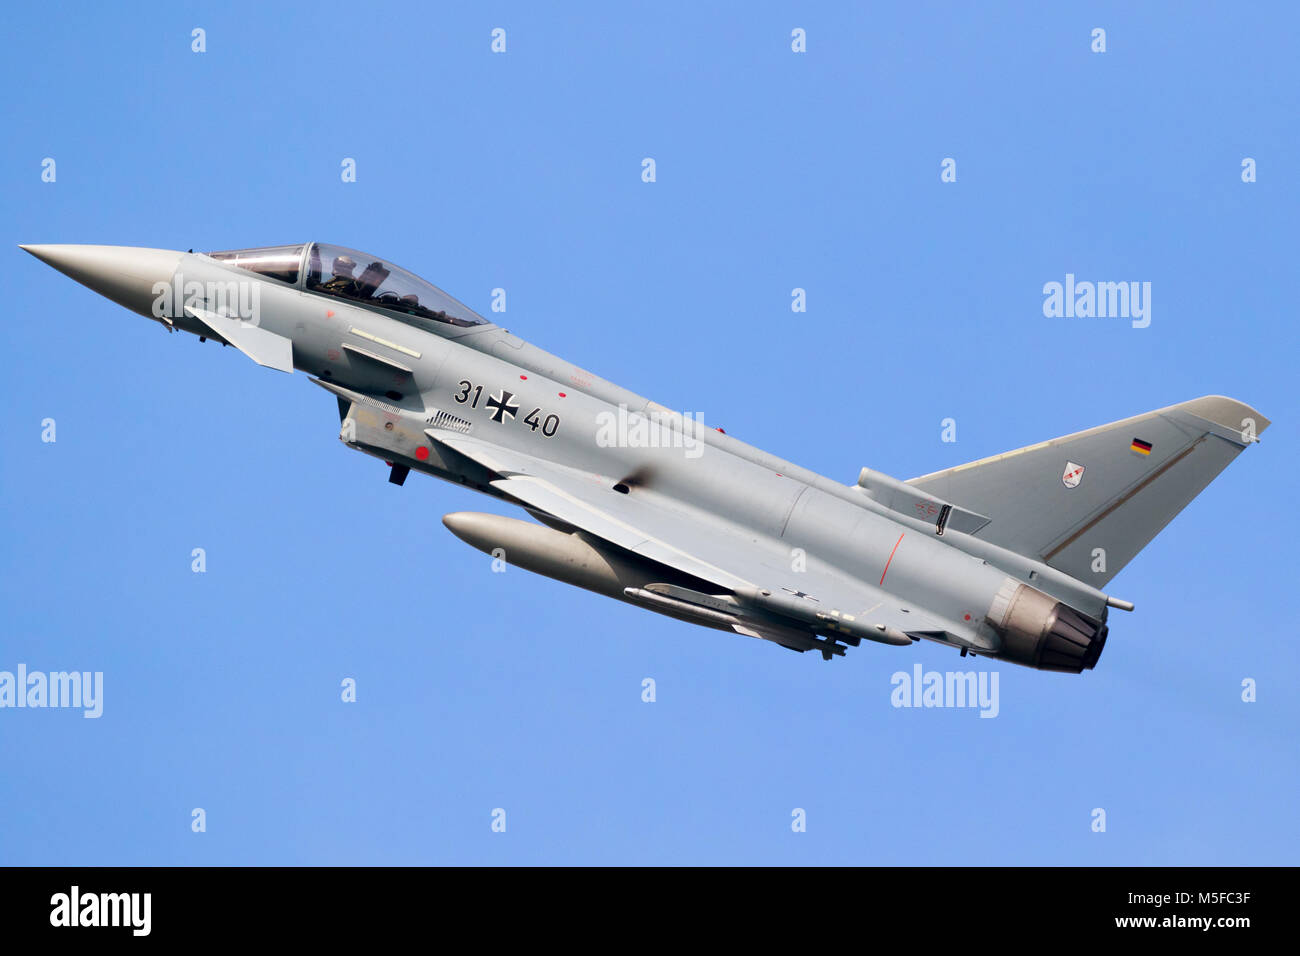 LEEUWARDEN, Pays-Bas - MAR 28, 2017 : German Air Force Eurofighter Typhoon jet chasse plaine en vol pendant l'exercice Frisian Flag. Banque D'Images